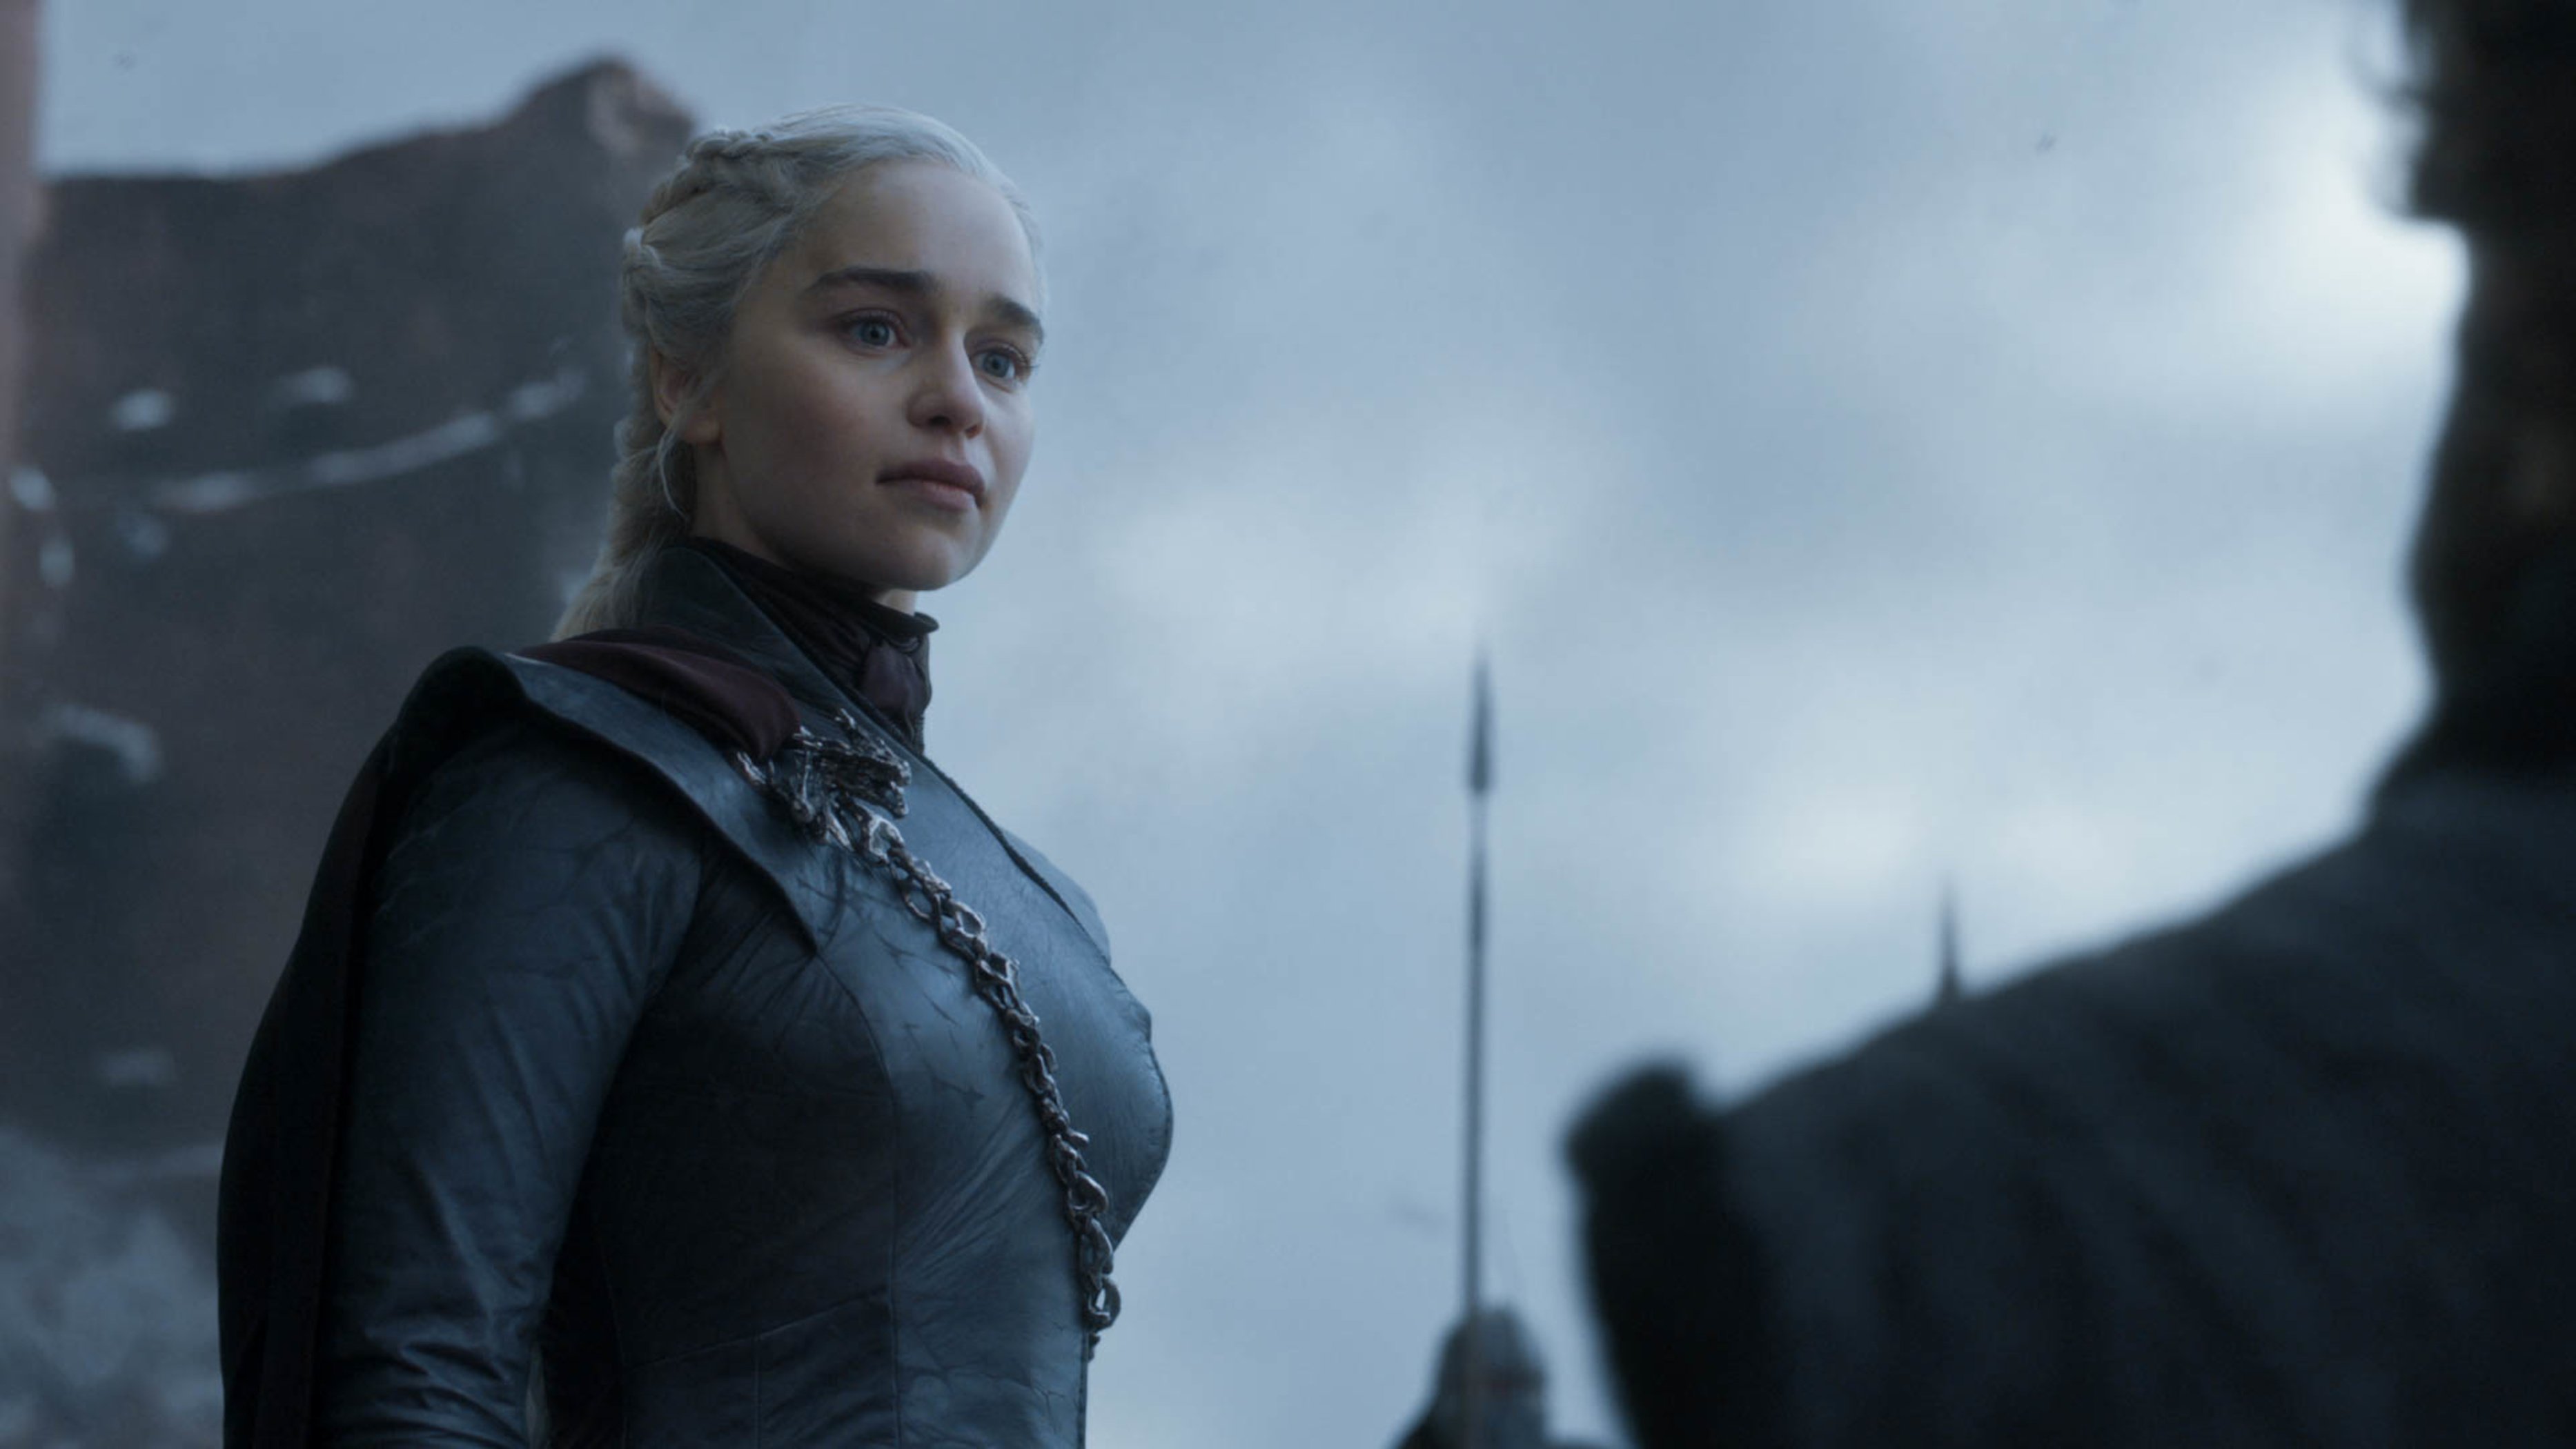 Daenerys Targaryen after her victory at King's Landing.